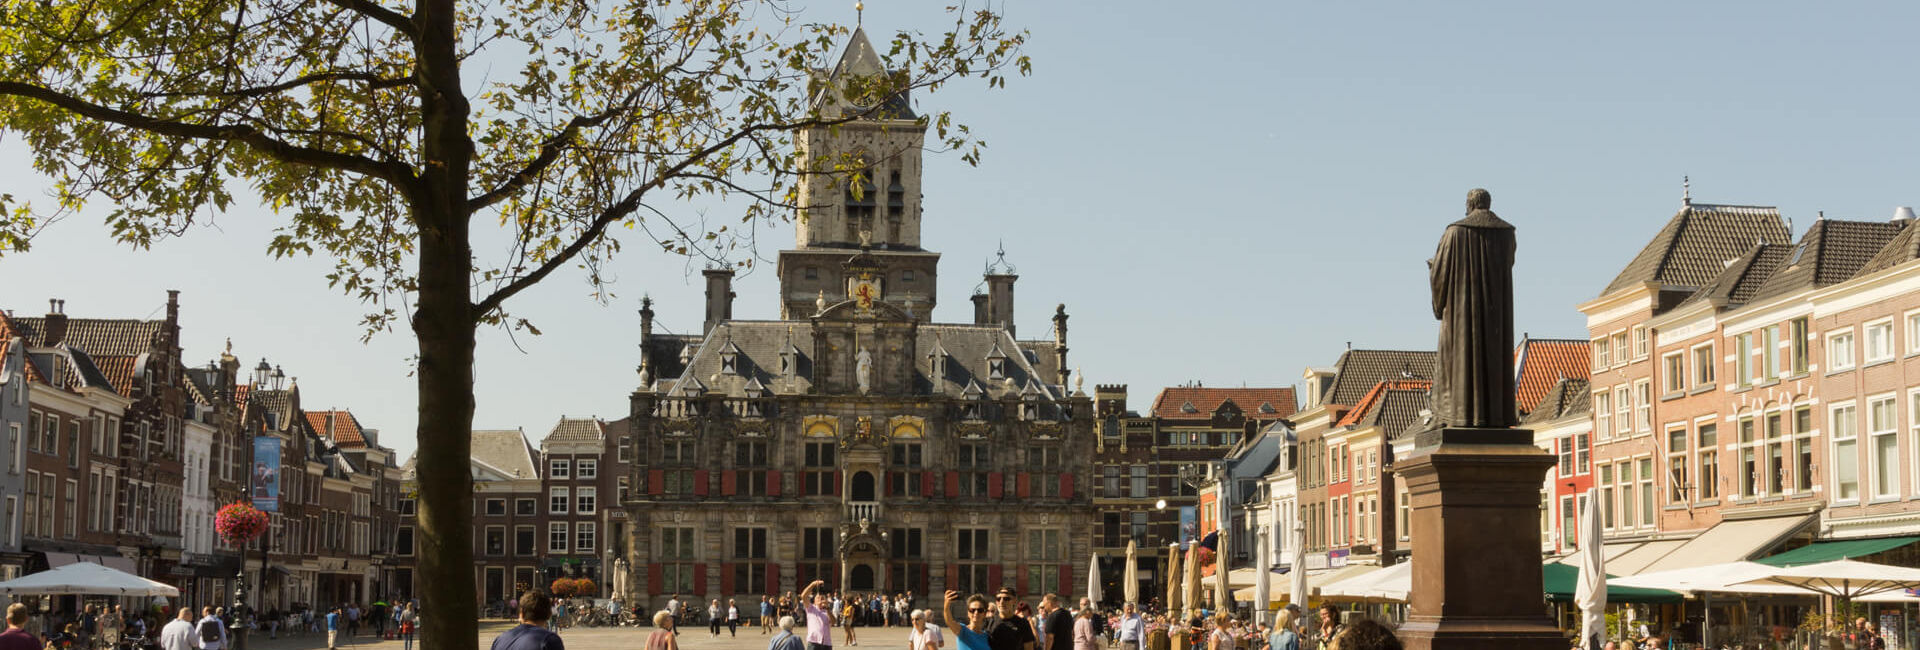 Stadhuis en marktplein Delft vanaf de Nieuwe Kerk